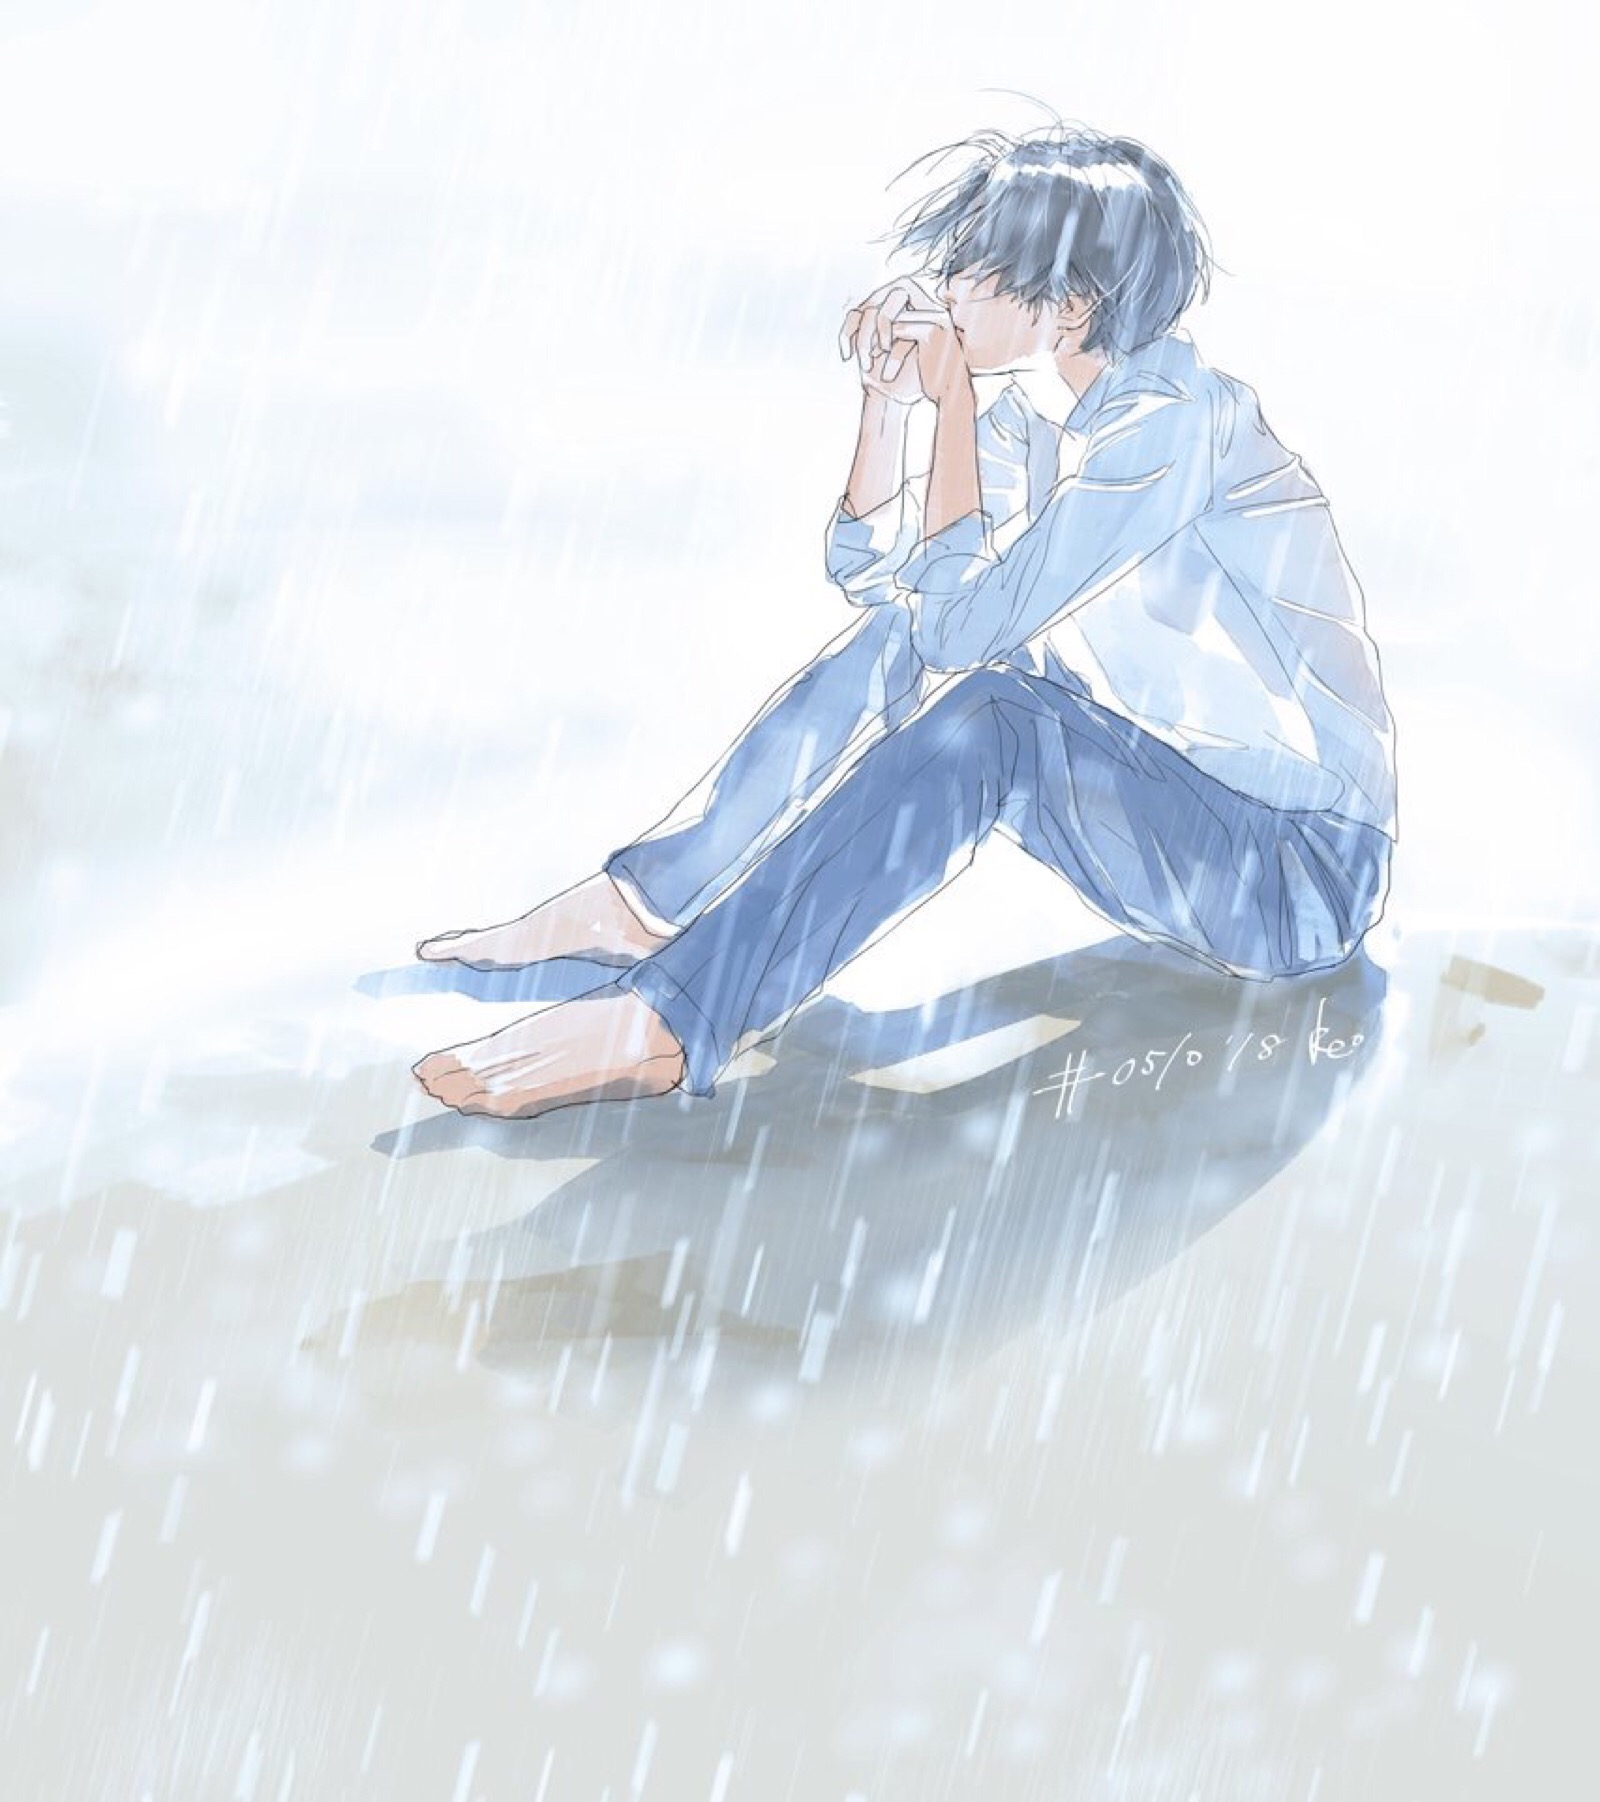 (雨中撑着伞的中年男人,被淋湿的背影即将淹没在人海中.) - 伤感说说吧